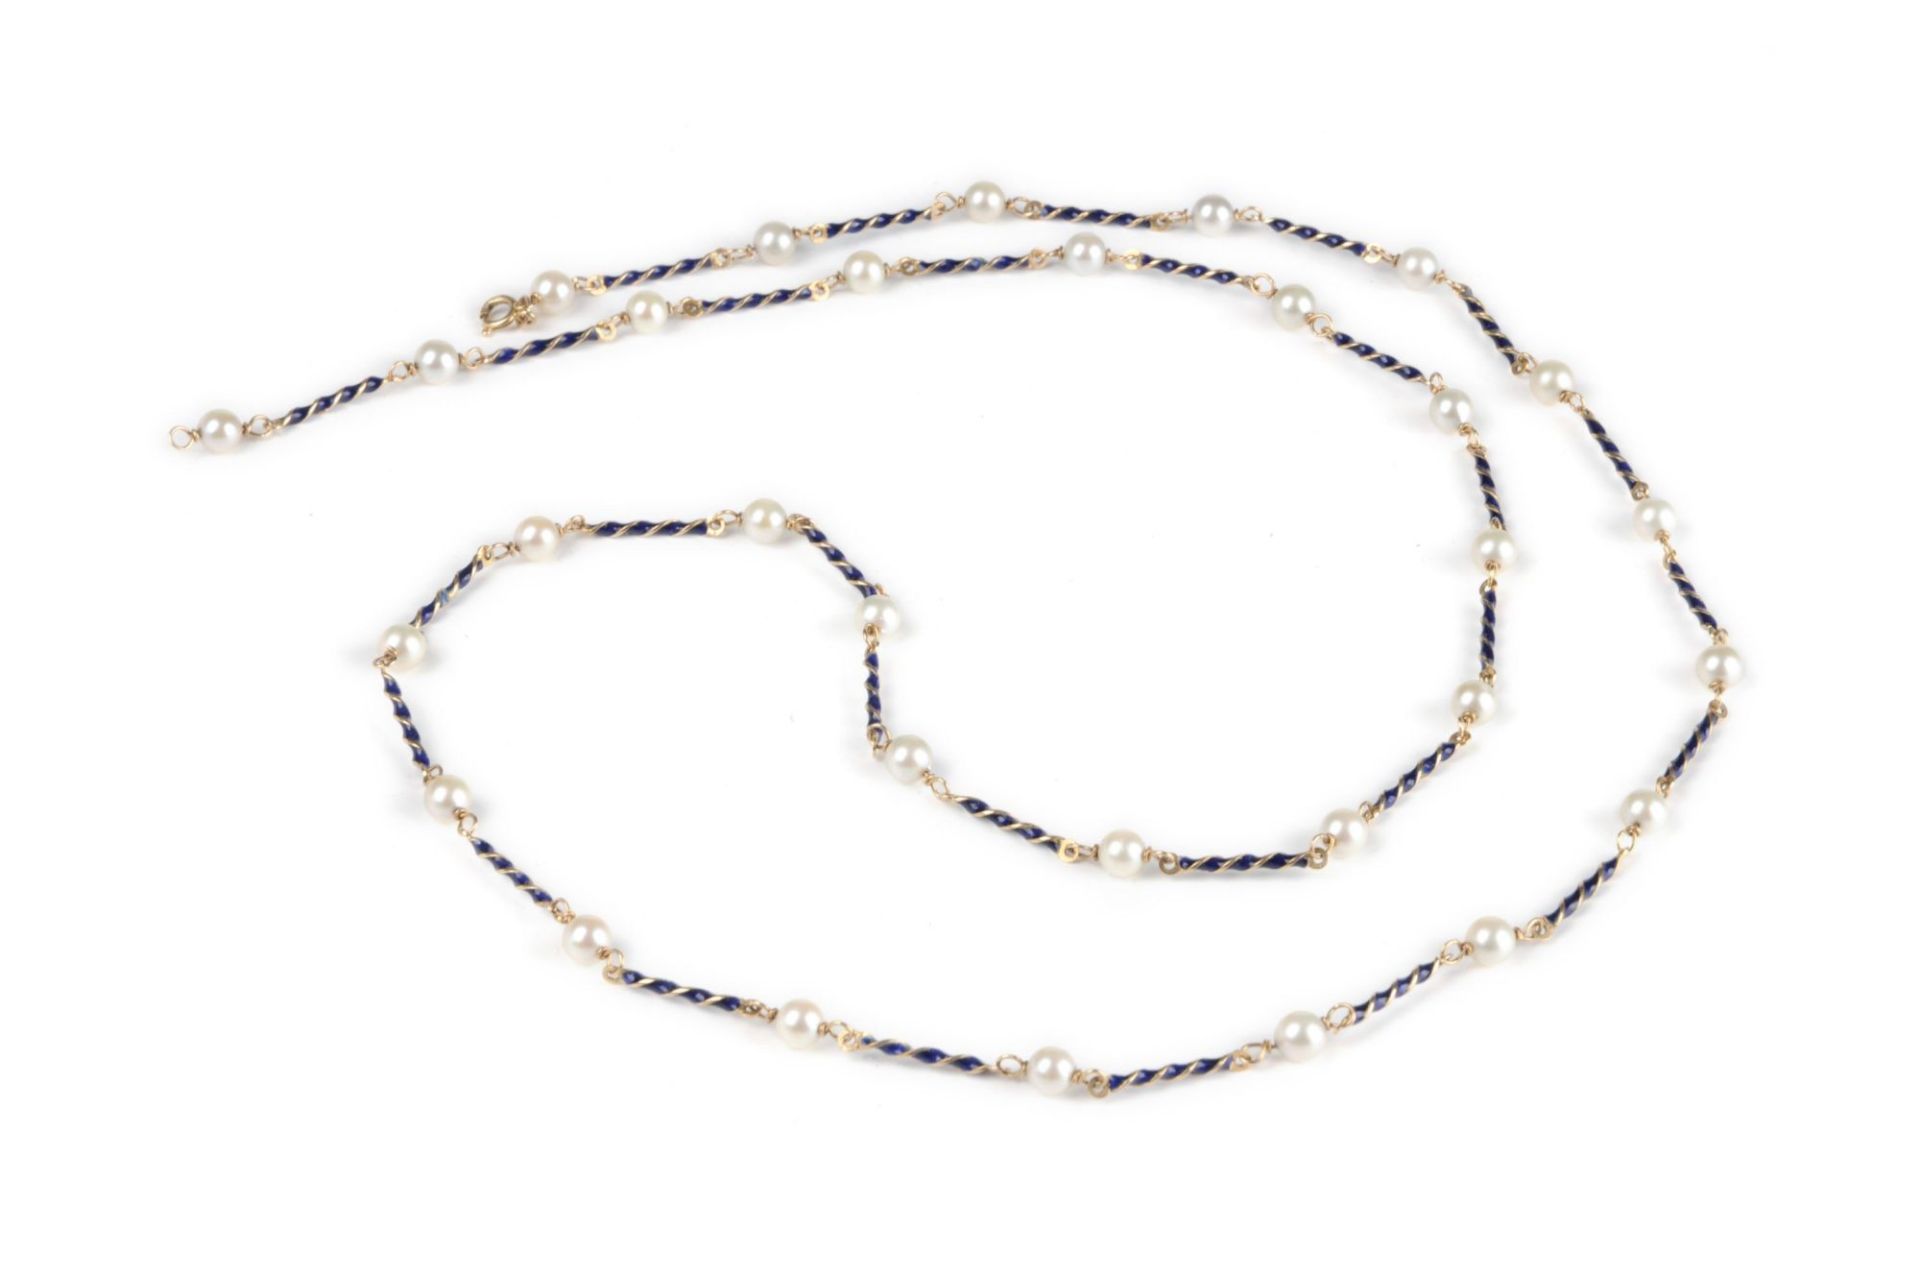 Lange Kette mit Perlen und dunkelblau emaillierten Zwischengliedern. Fabor, Sansepolcro, Arezzo,